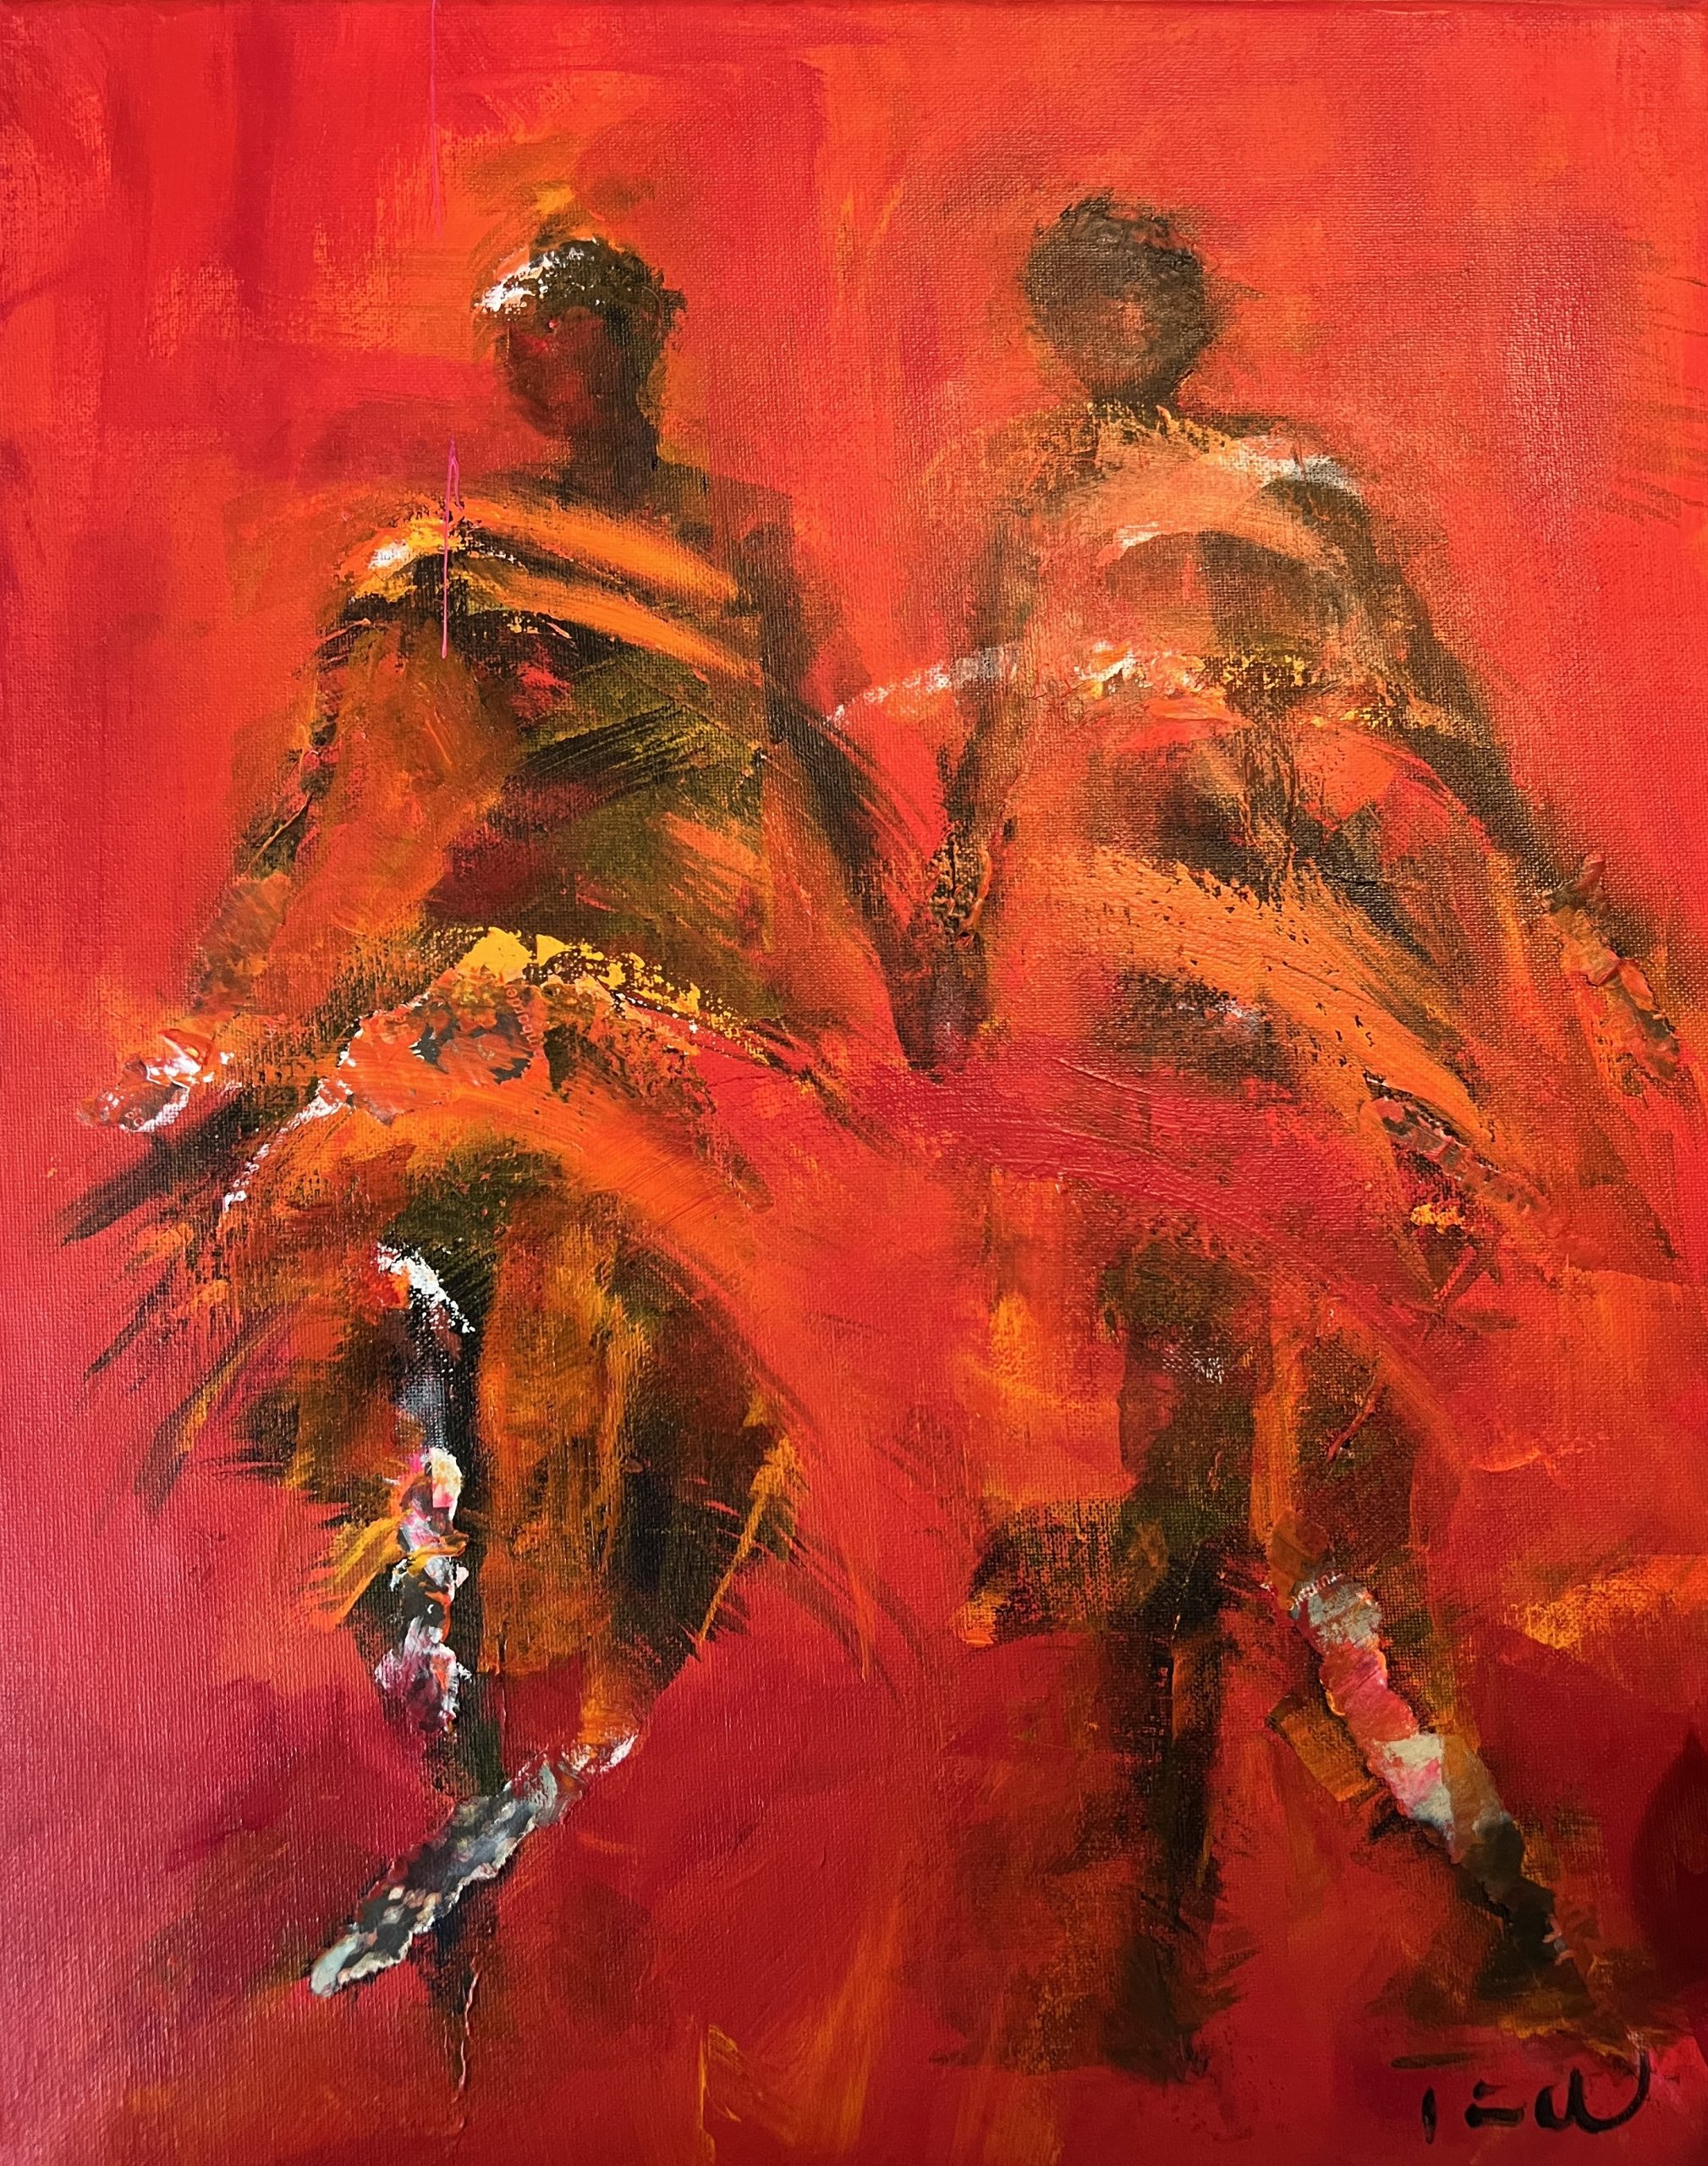 Der er gang i skørterne i dette maleri med to der danser lindyhop eller jitterbug. Maleriet er abstrakt og farverigt samtidig med at man fornemmer de mennesker i bevægelse.